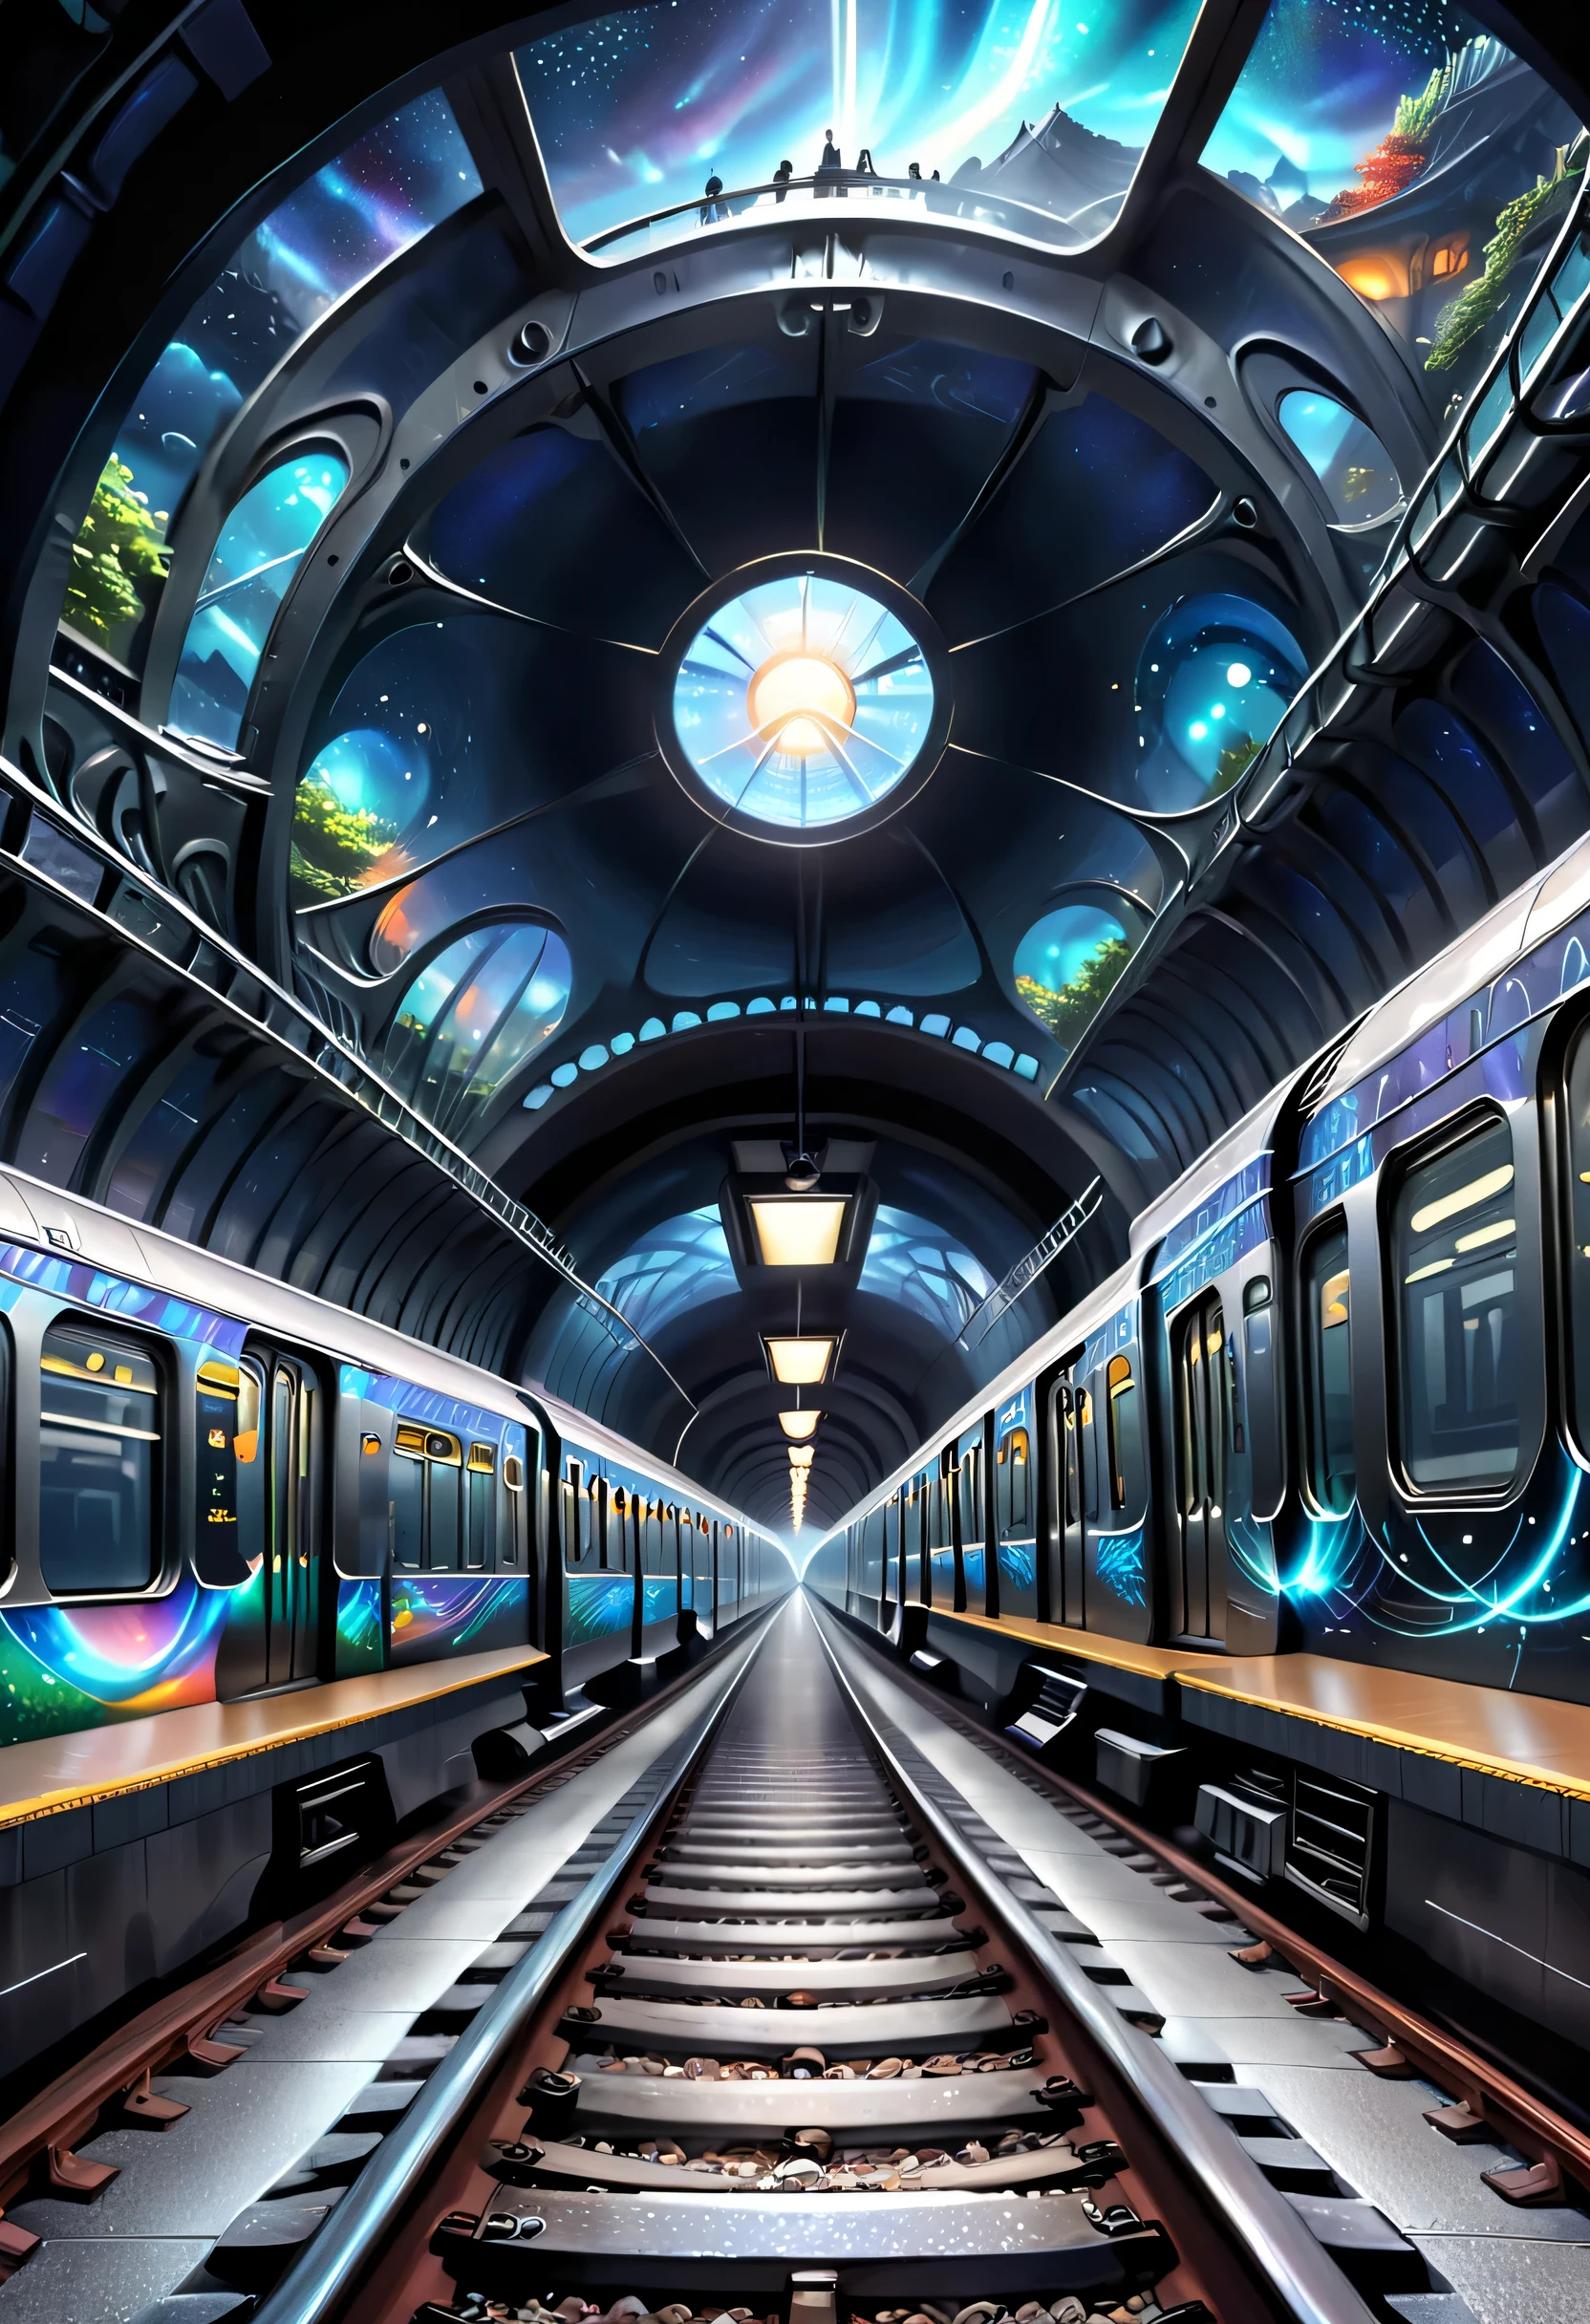 Он изображает соединение путей метро с пространством другого измерения.。Можно нарисовать тоннель метро，Один из разделов ведет в иномерный мир，Иллюстрации могут отображать своеобразные пейзажи, загадочные видения и пассажиров из разных измерений.。Поезд Звездный купол служит переходом между обычным миром и другим измерением.，Создает загадочную и завораживающую атмосферу。